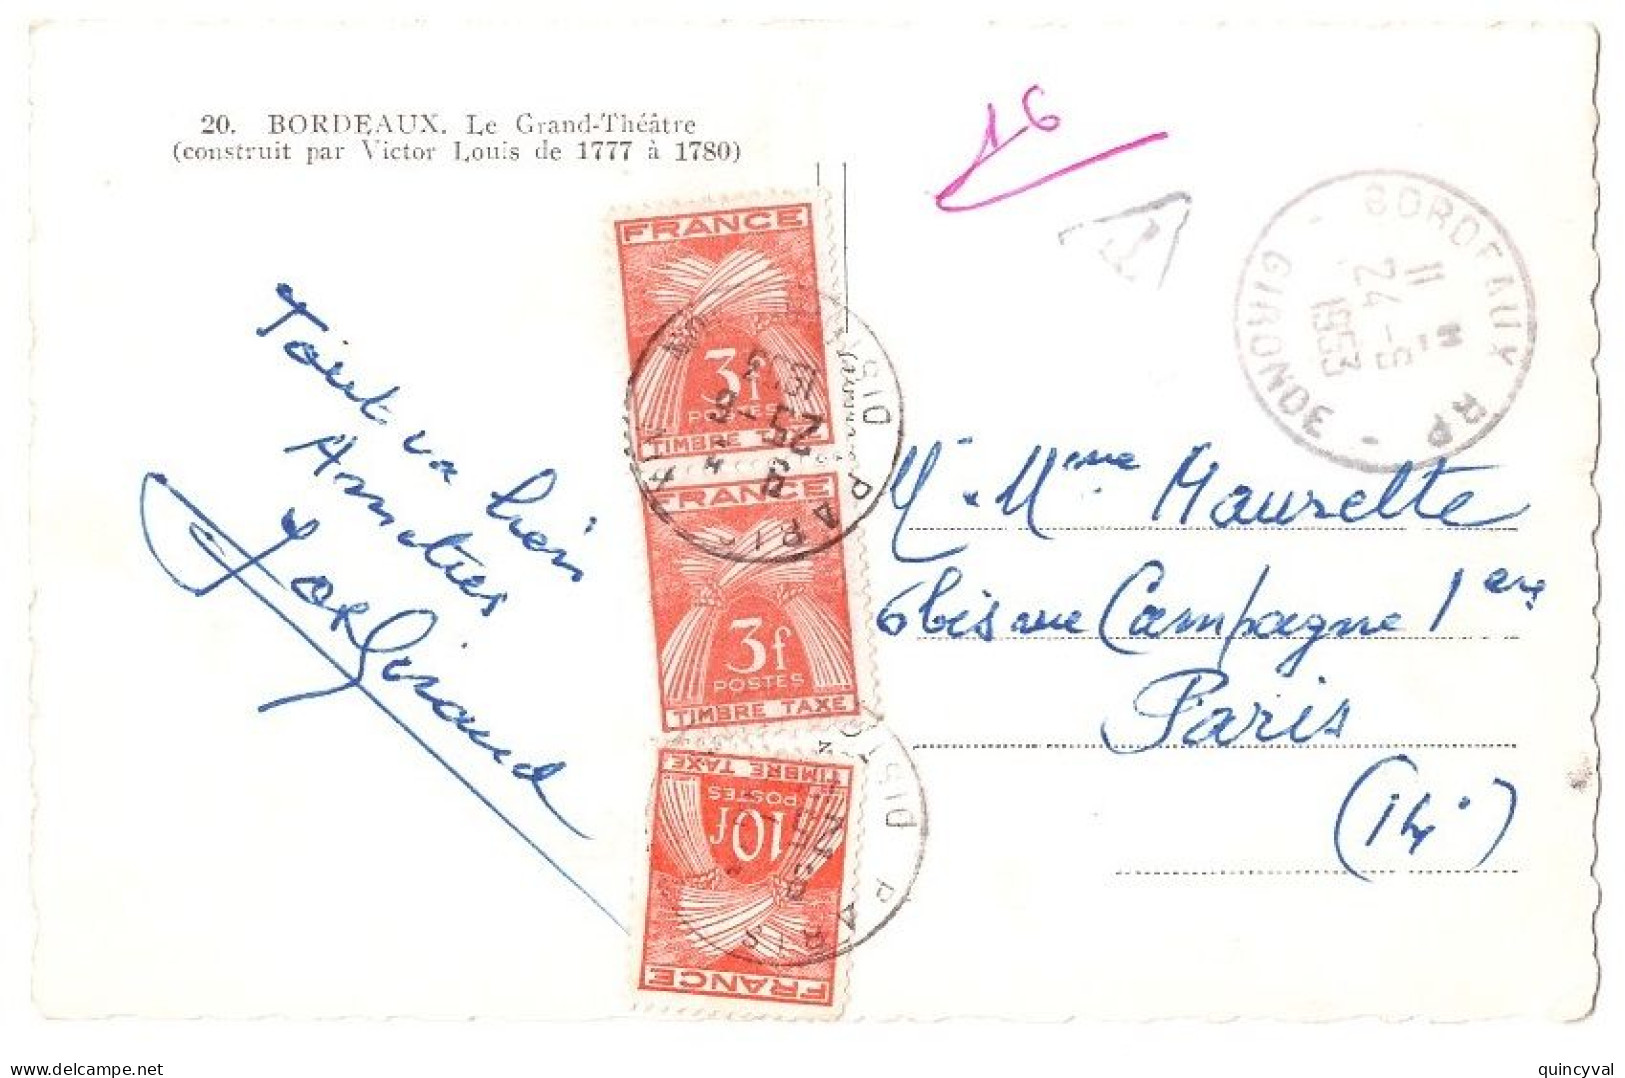 BORDEAUX Gironde Carte Postale - De 5 Mots NON AFFRANCHIE Ob 24 6 1953 Dest Paris Taxe 16 F Gerbes 3 F 10 F Yv 83 86 - 1859-1959 Briefe & Dokumente